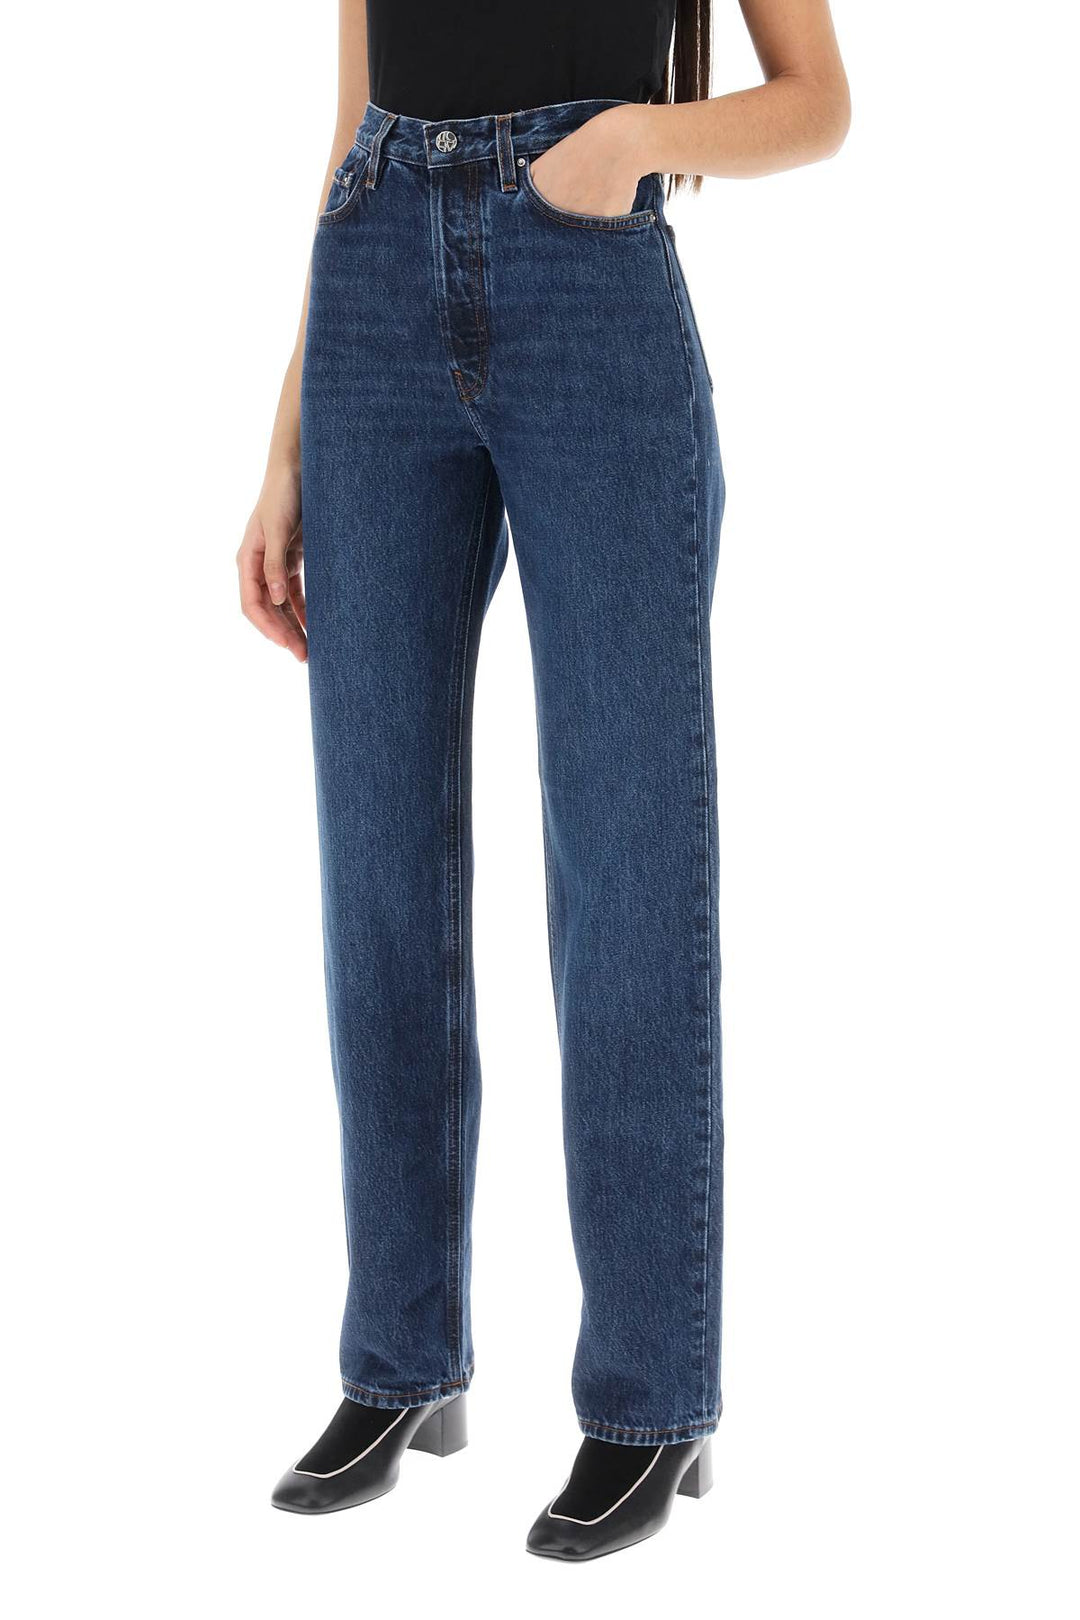 Toteme Organic Denim Classic Cut Jeans   Blu